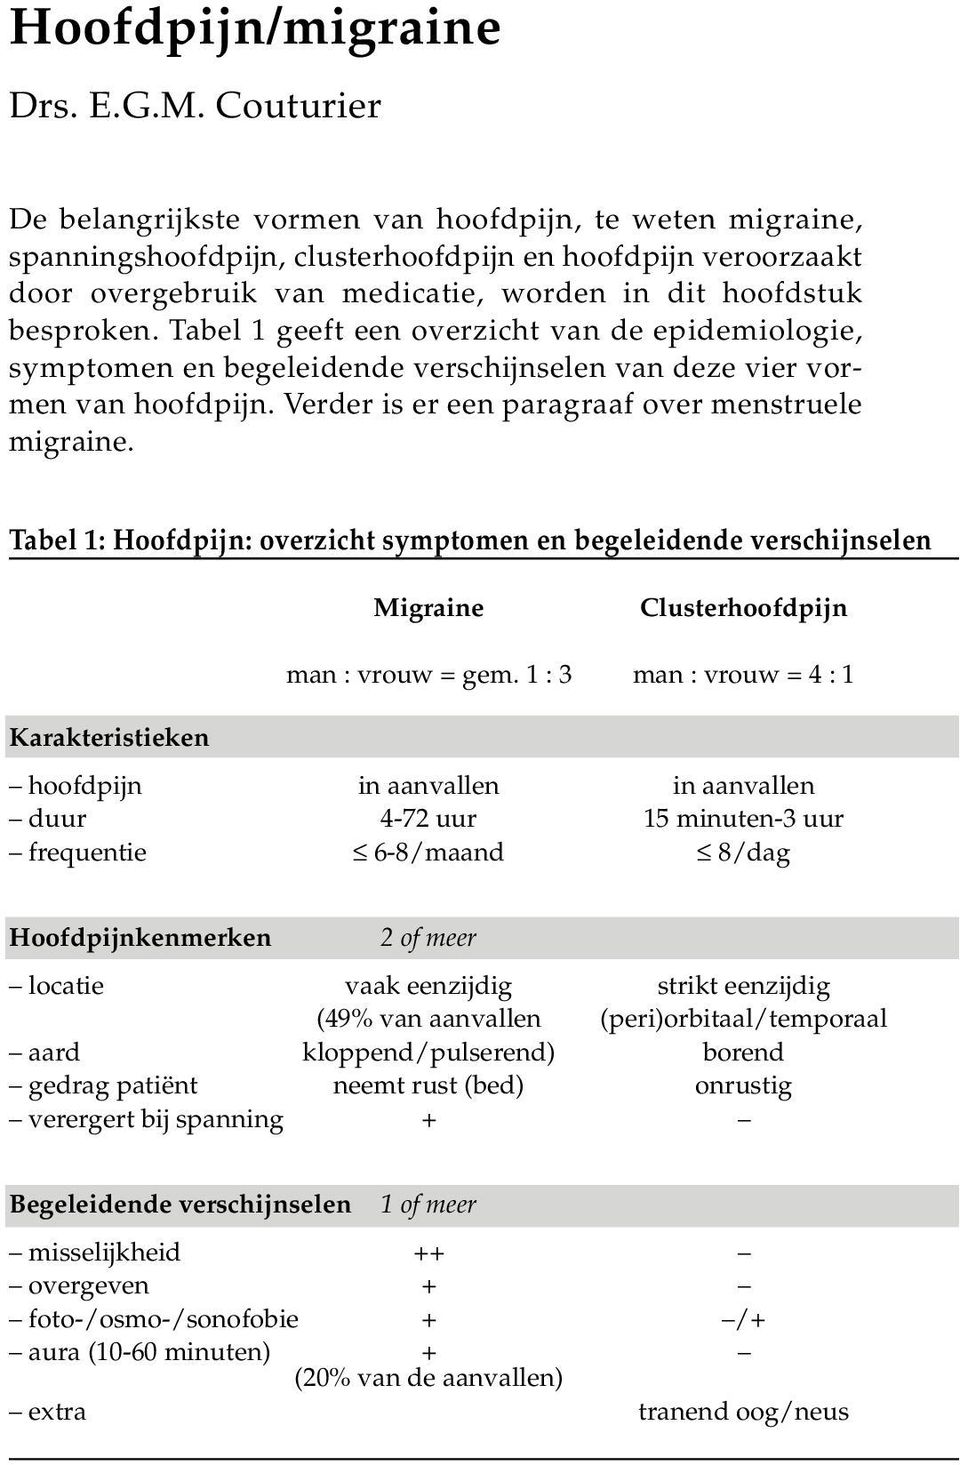 Tabel 1 geeft een overzicht van de epidemiologie, symptomen en begeleidende verschijnselen van deze vier vormen van hoofdpijn. Verder is er een paragraaf over menstruele migraine.